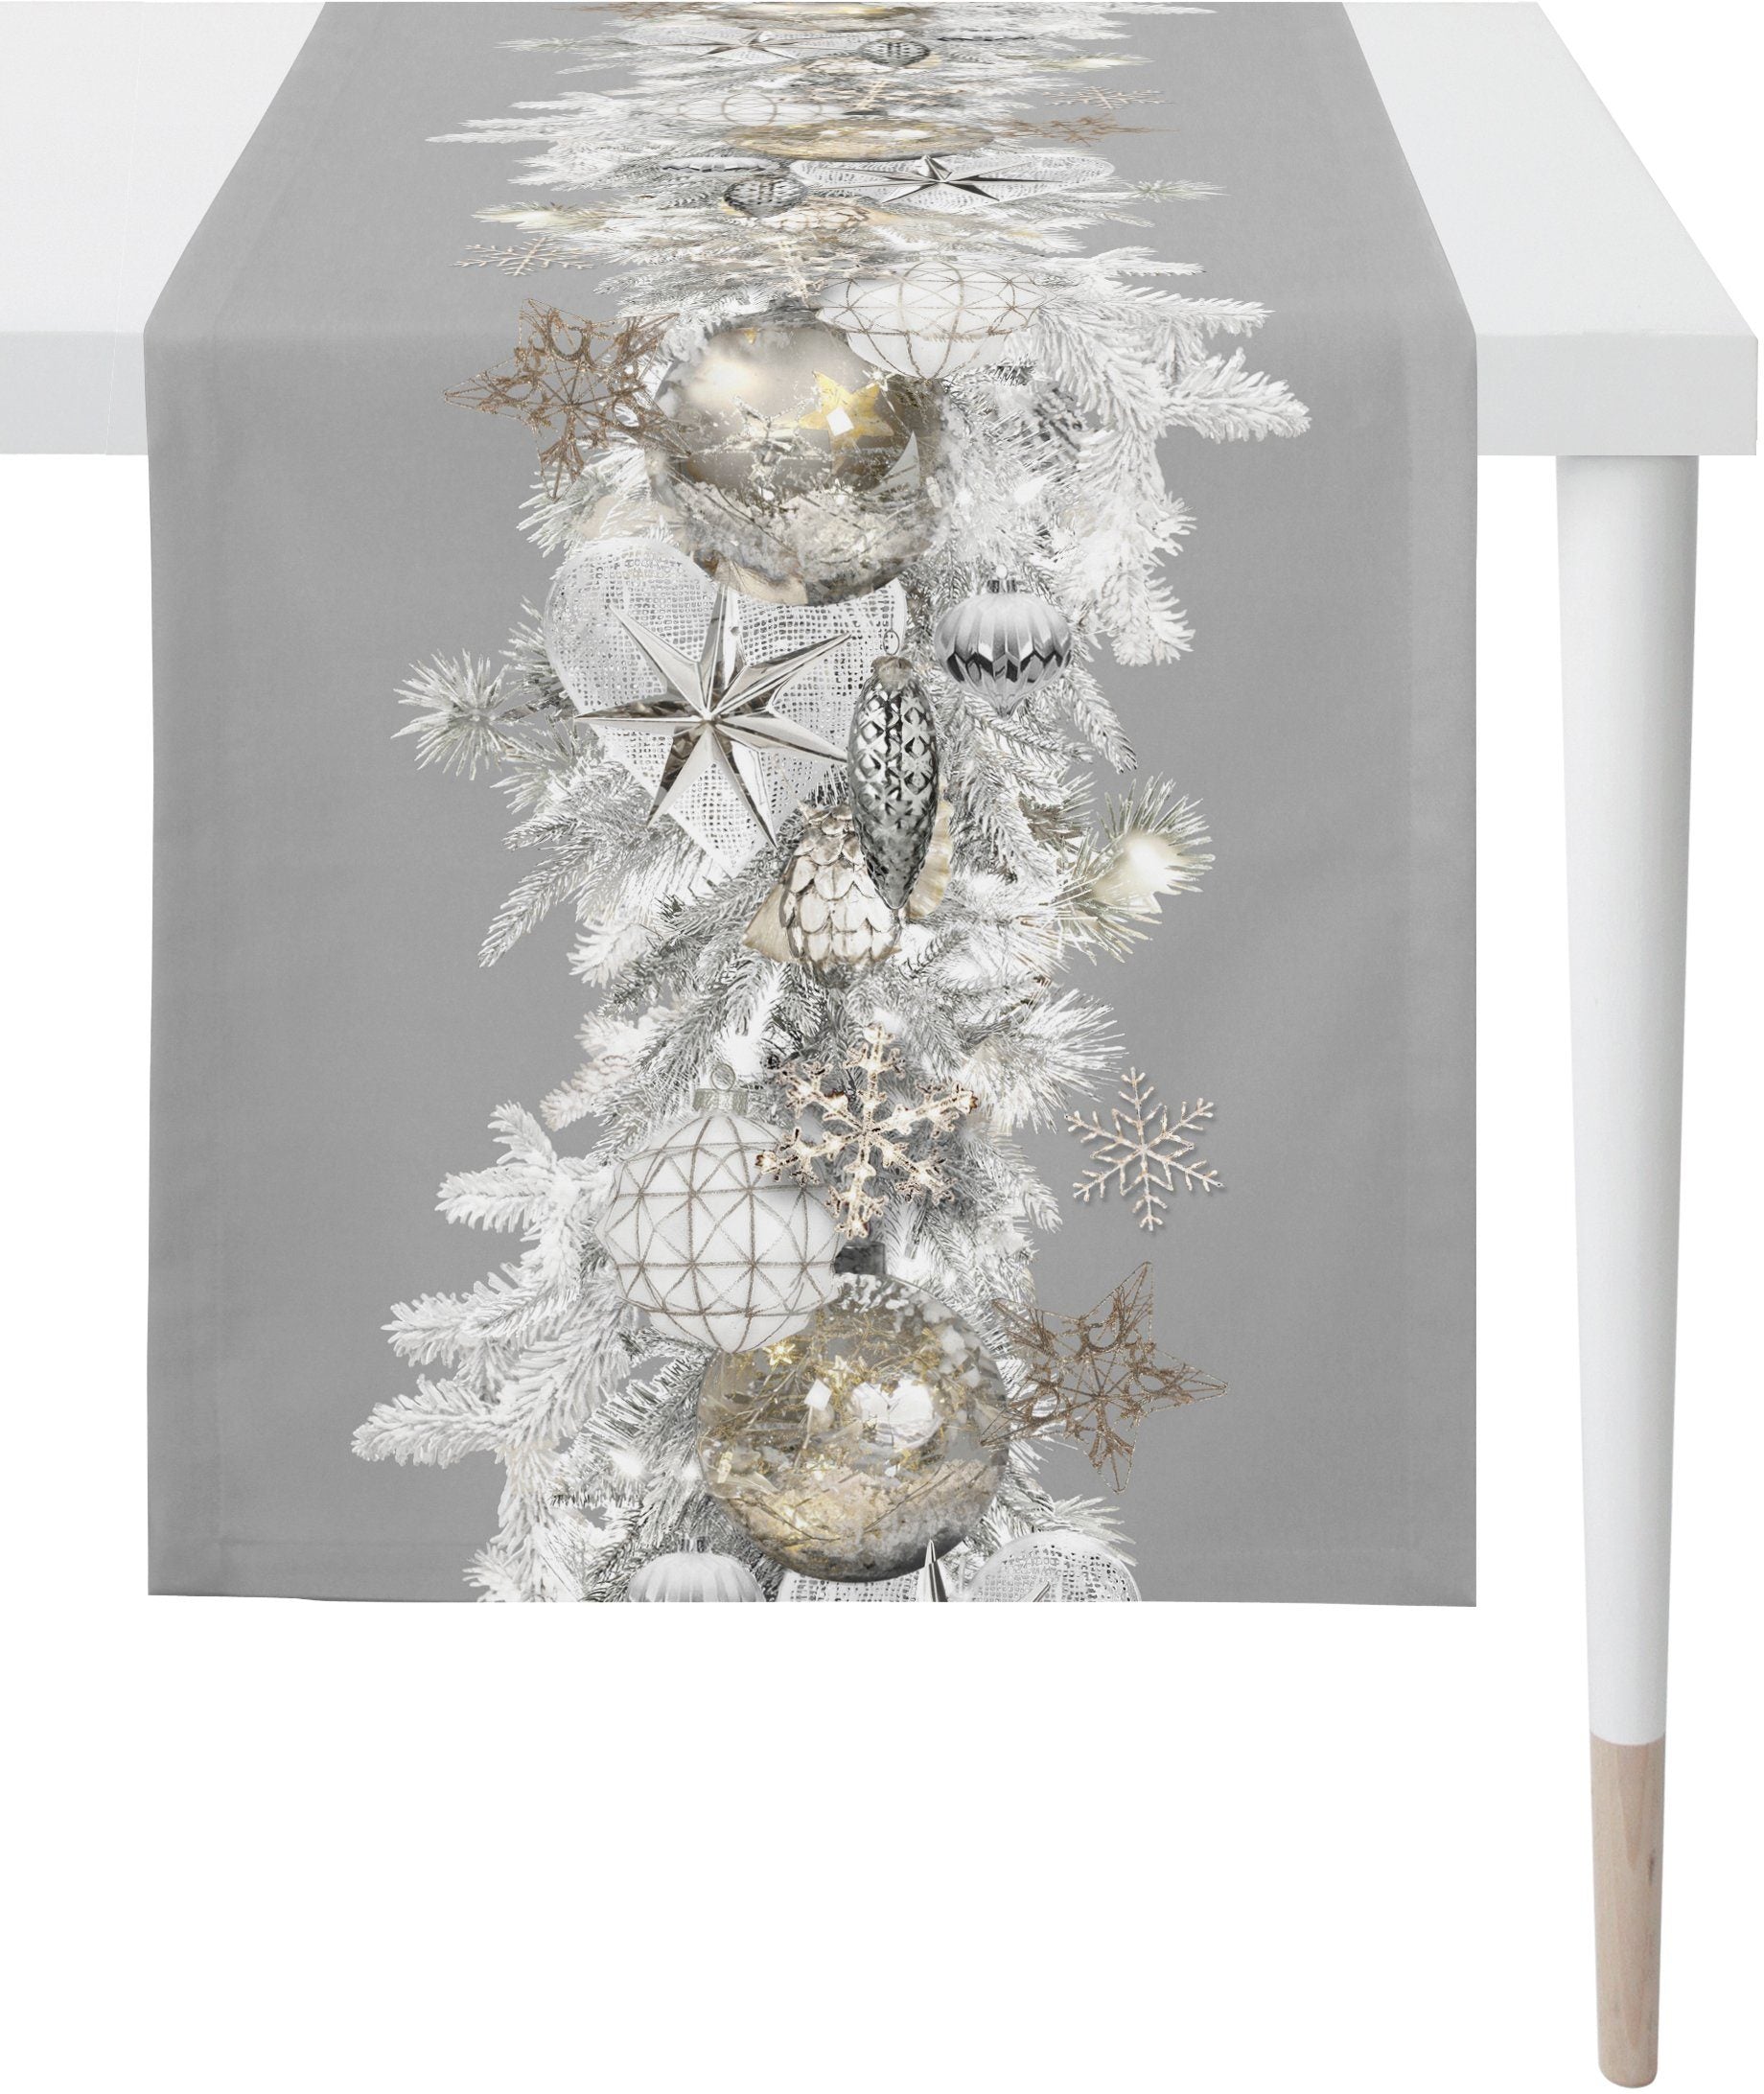 Apelt Tischläufer Christmas Elegance 46x135cm » Sicher bestellen